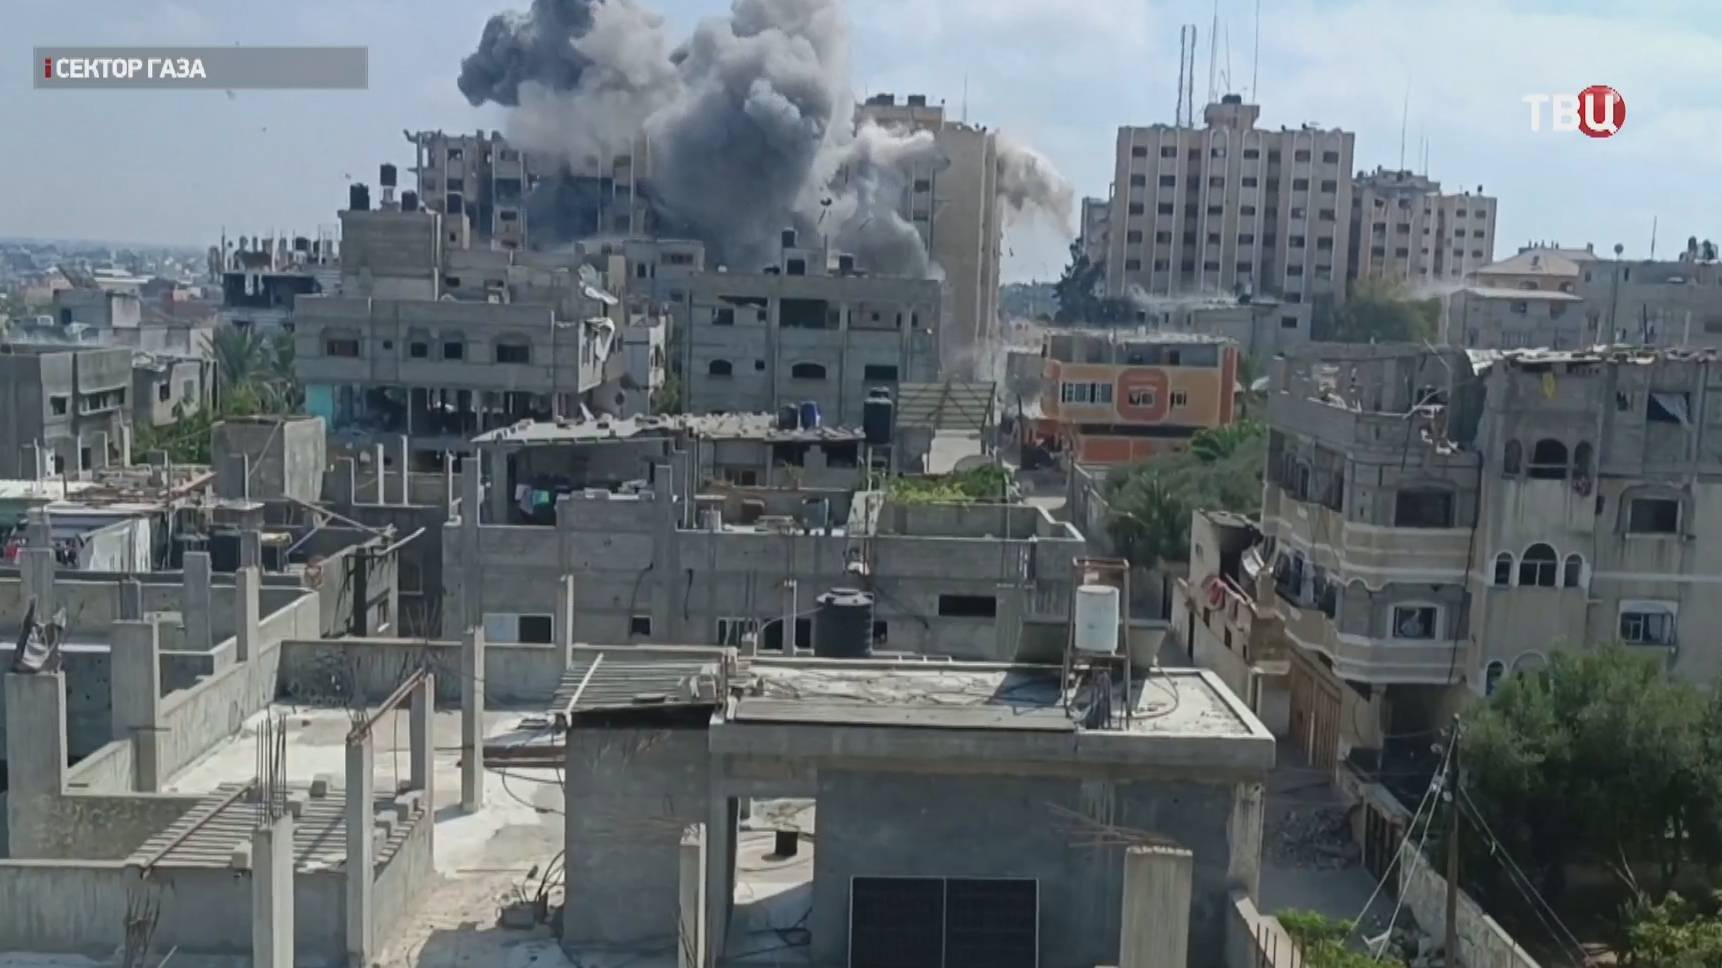 Анклав лежит в руинах: Небензя рассказал в ООН правду о ситуации в Газе / События на ТВЦ